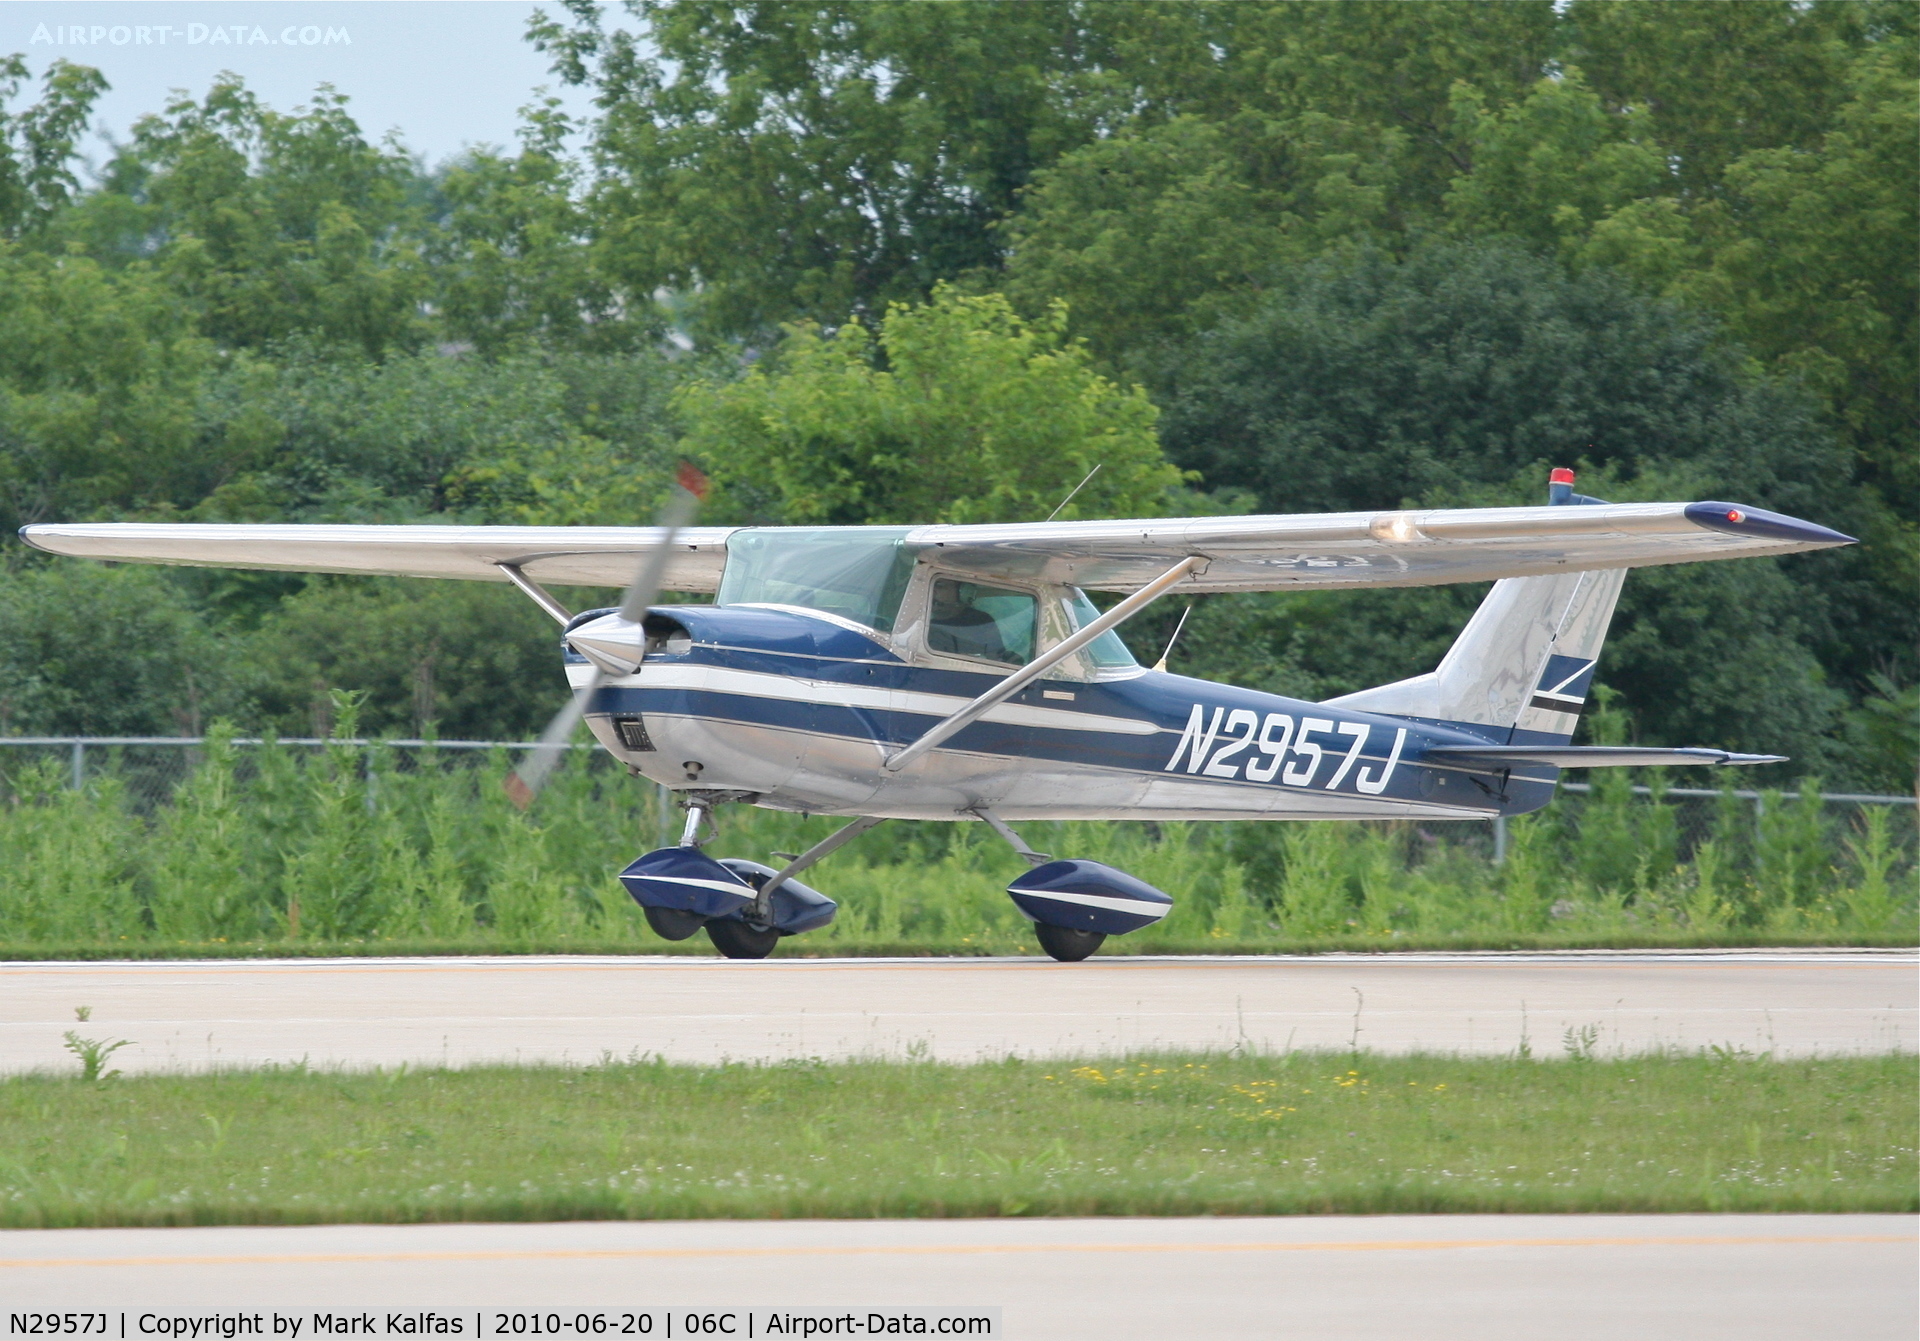 N2957J, 1966 Cessna 150G C/N 15065757, Cessna 150G, N2957J, departing RWY 11 06C (Schaumburg, IL).